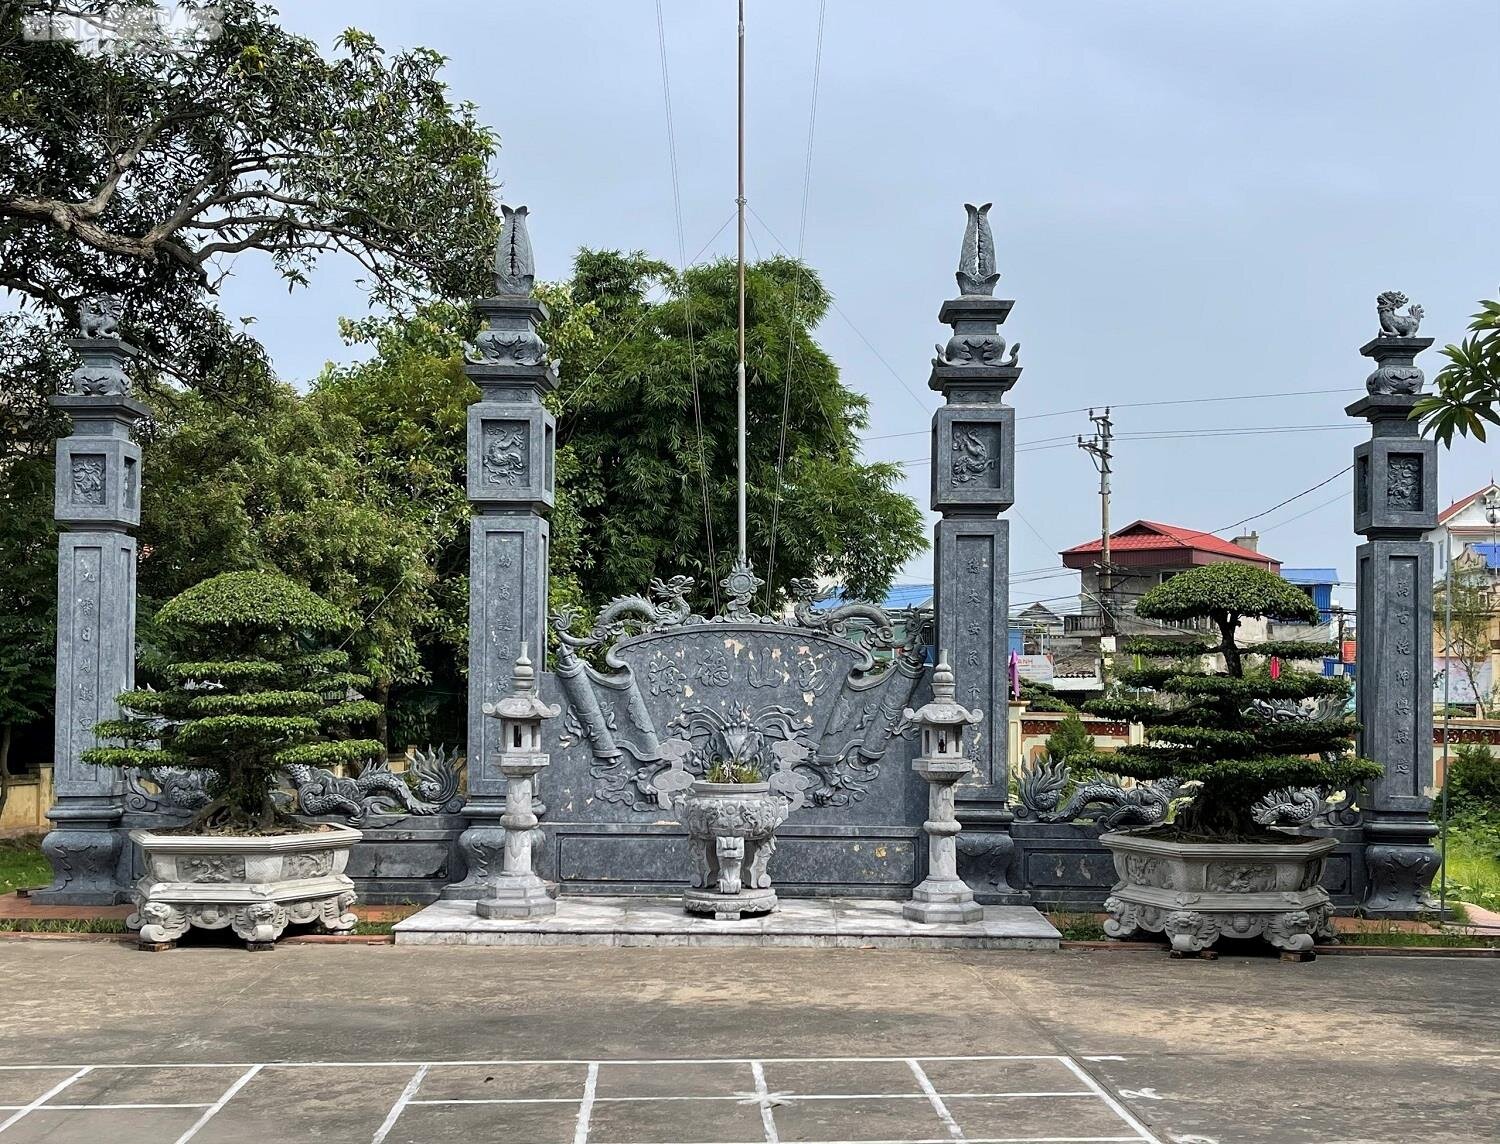 Hai cây sanh cổ được coi là bảo vật của làng Vị Khê được đặt trang trọng ở khu vực sân đình làng.